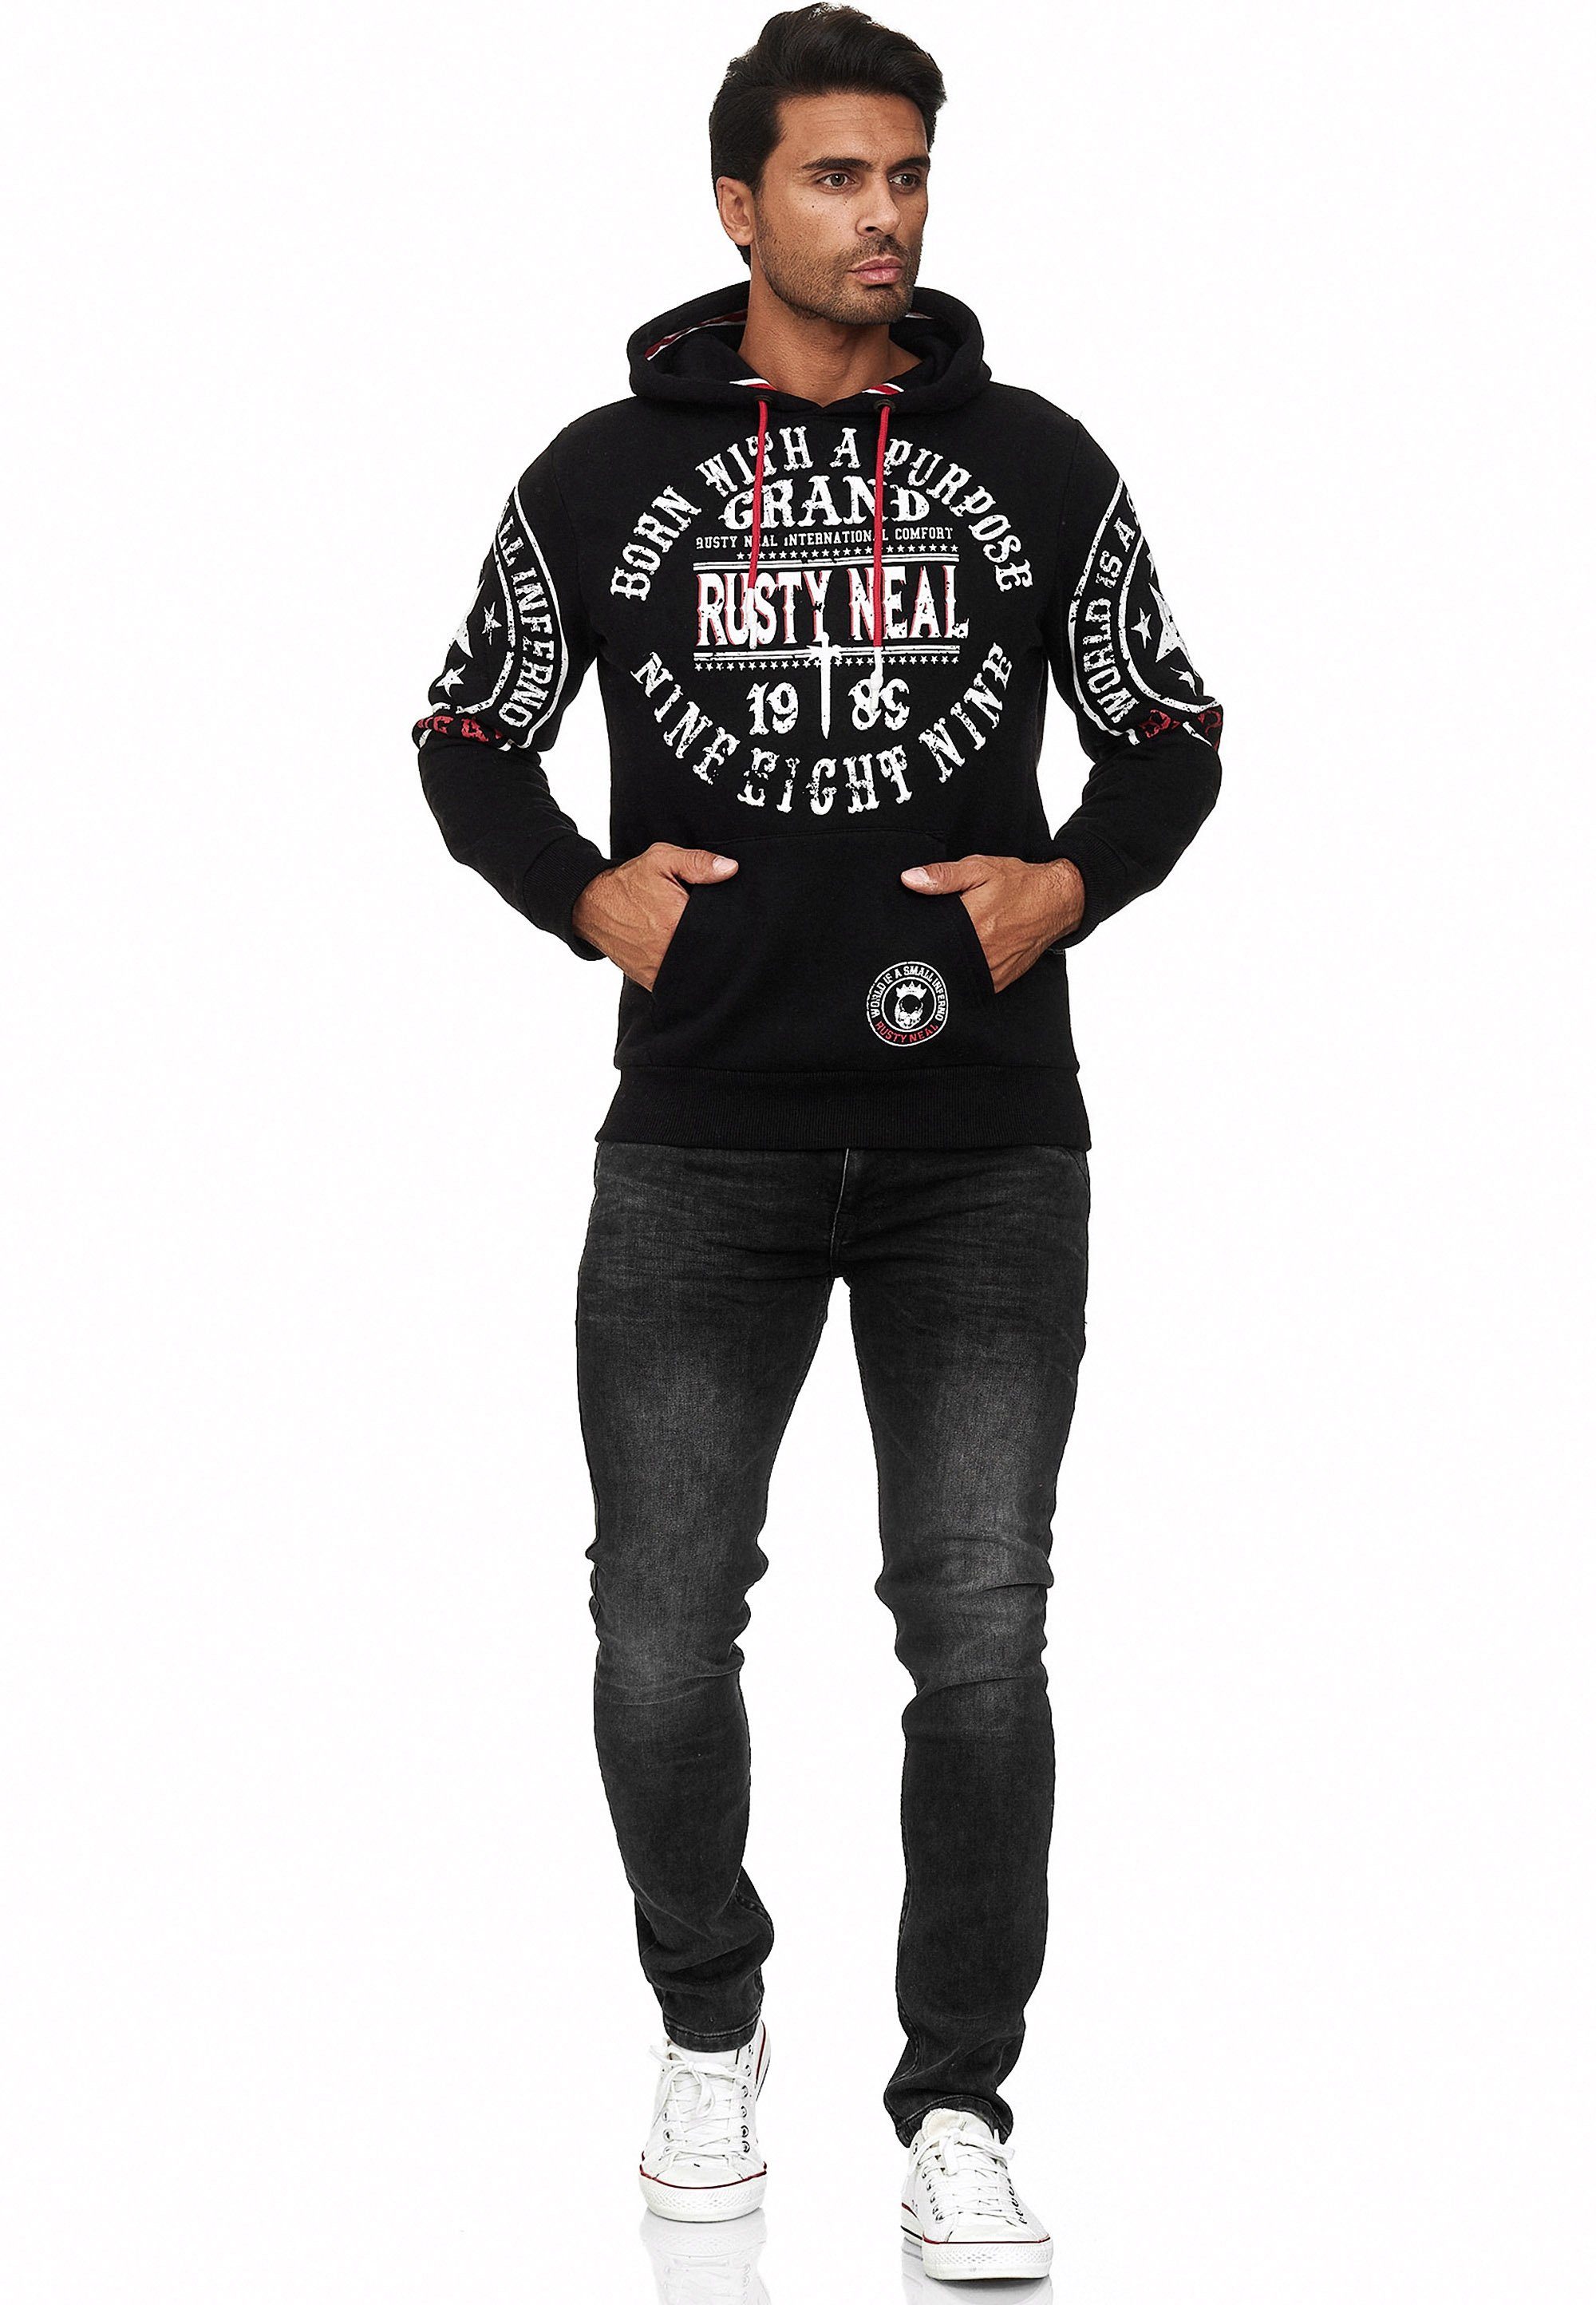 Rusty Neal Kapuzensweatshirt mit coolen Markenprints schwarz-weiß